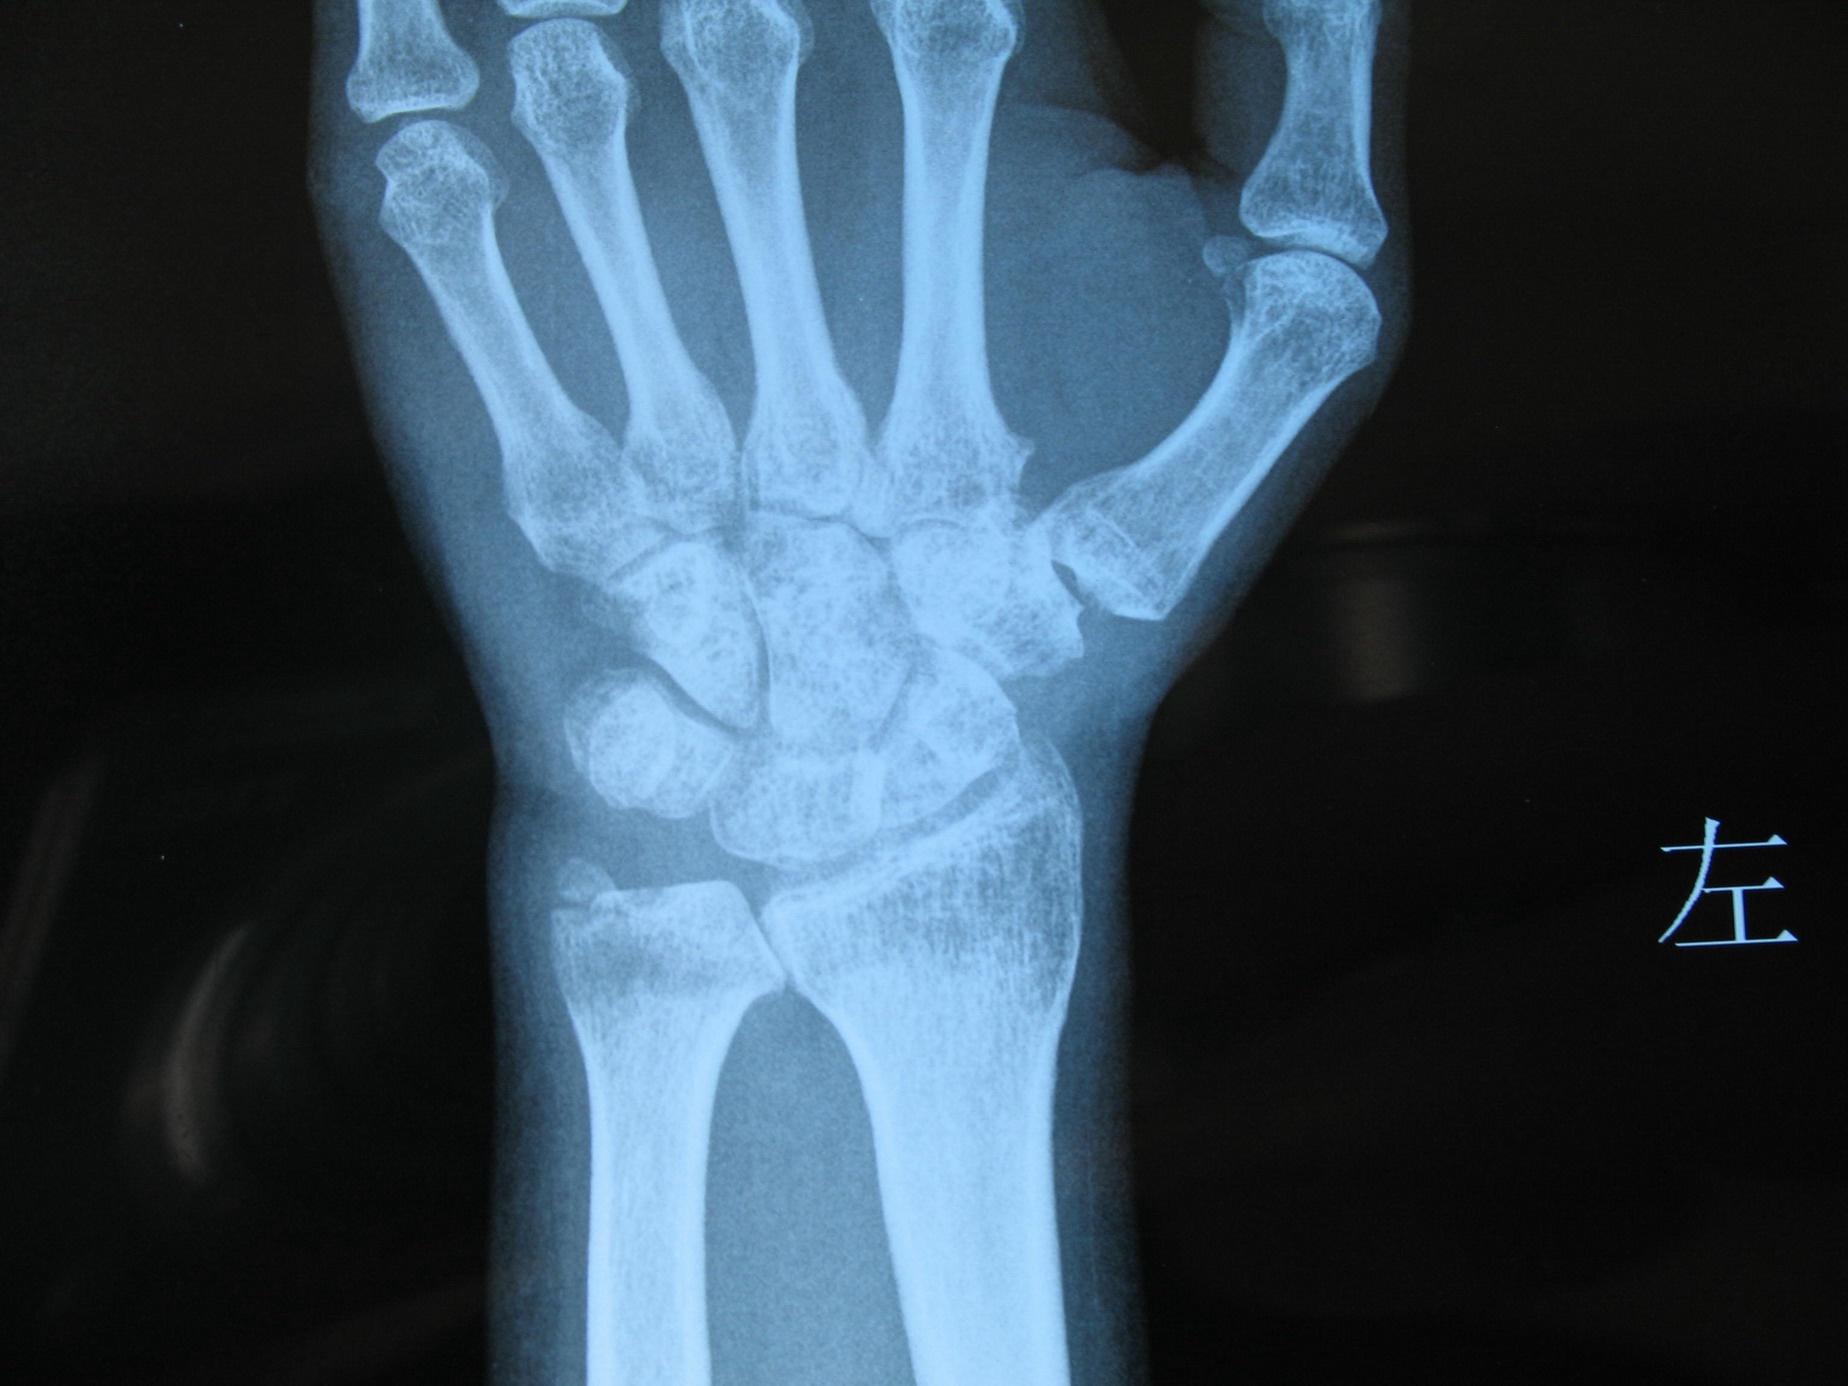 正常的手腕骨骼x光图图片